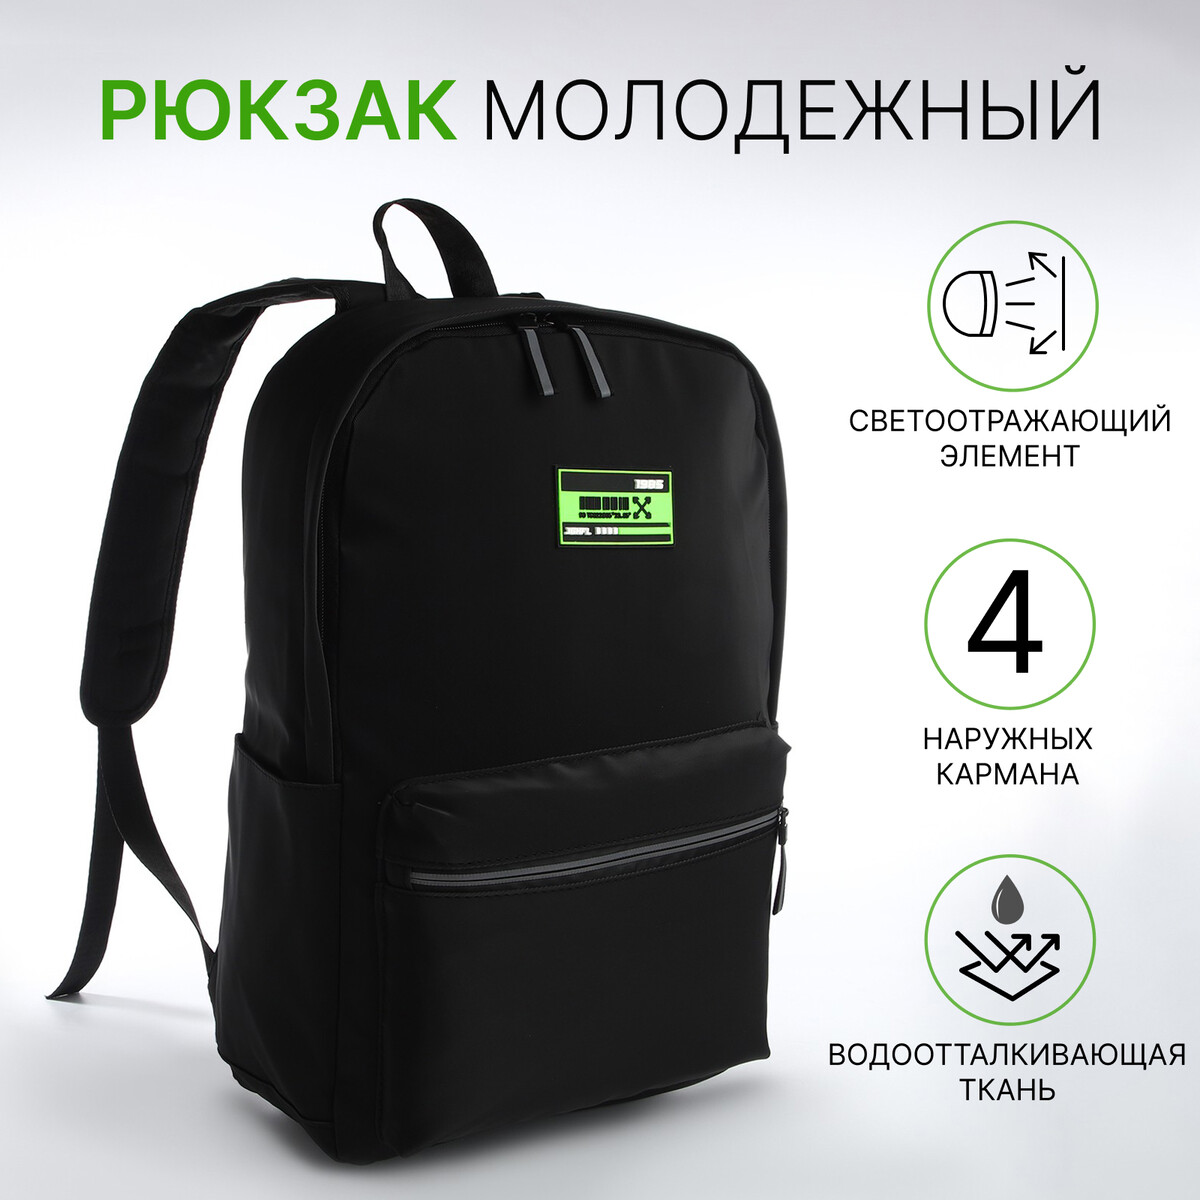 Рюкзак молодежный из текстиля на молнии, 2 кармана, цвет черный/зеленый рюкзак молодежный водонепроницаемый на молнии 3 кармана зеленый